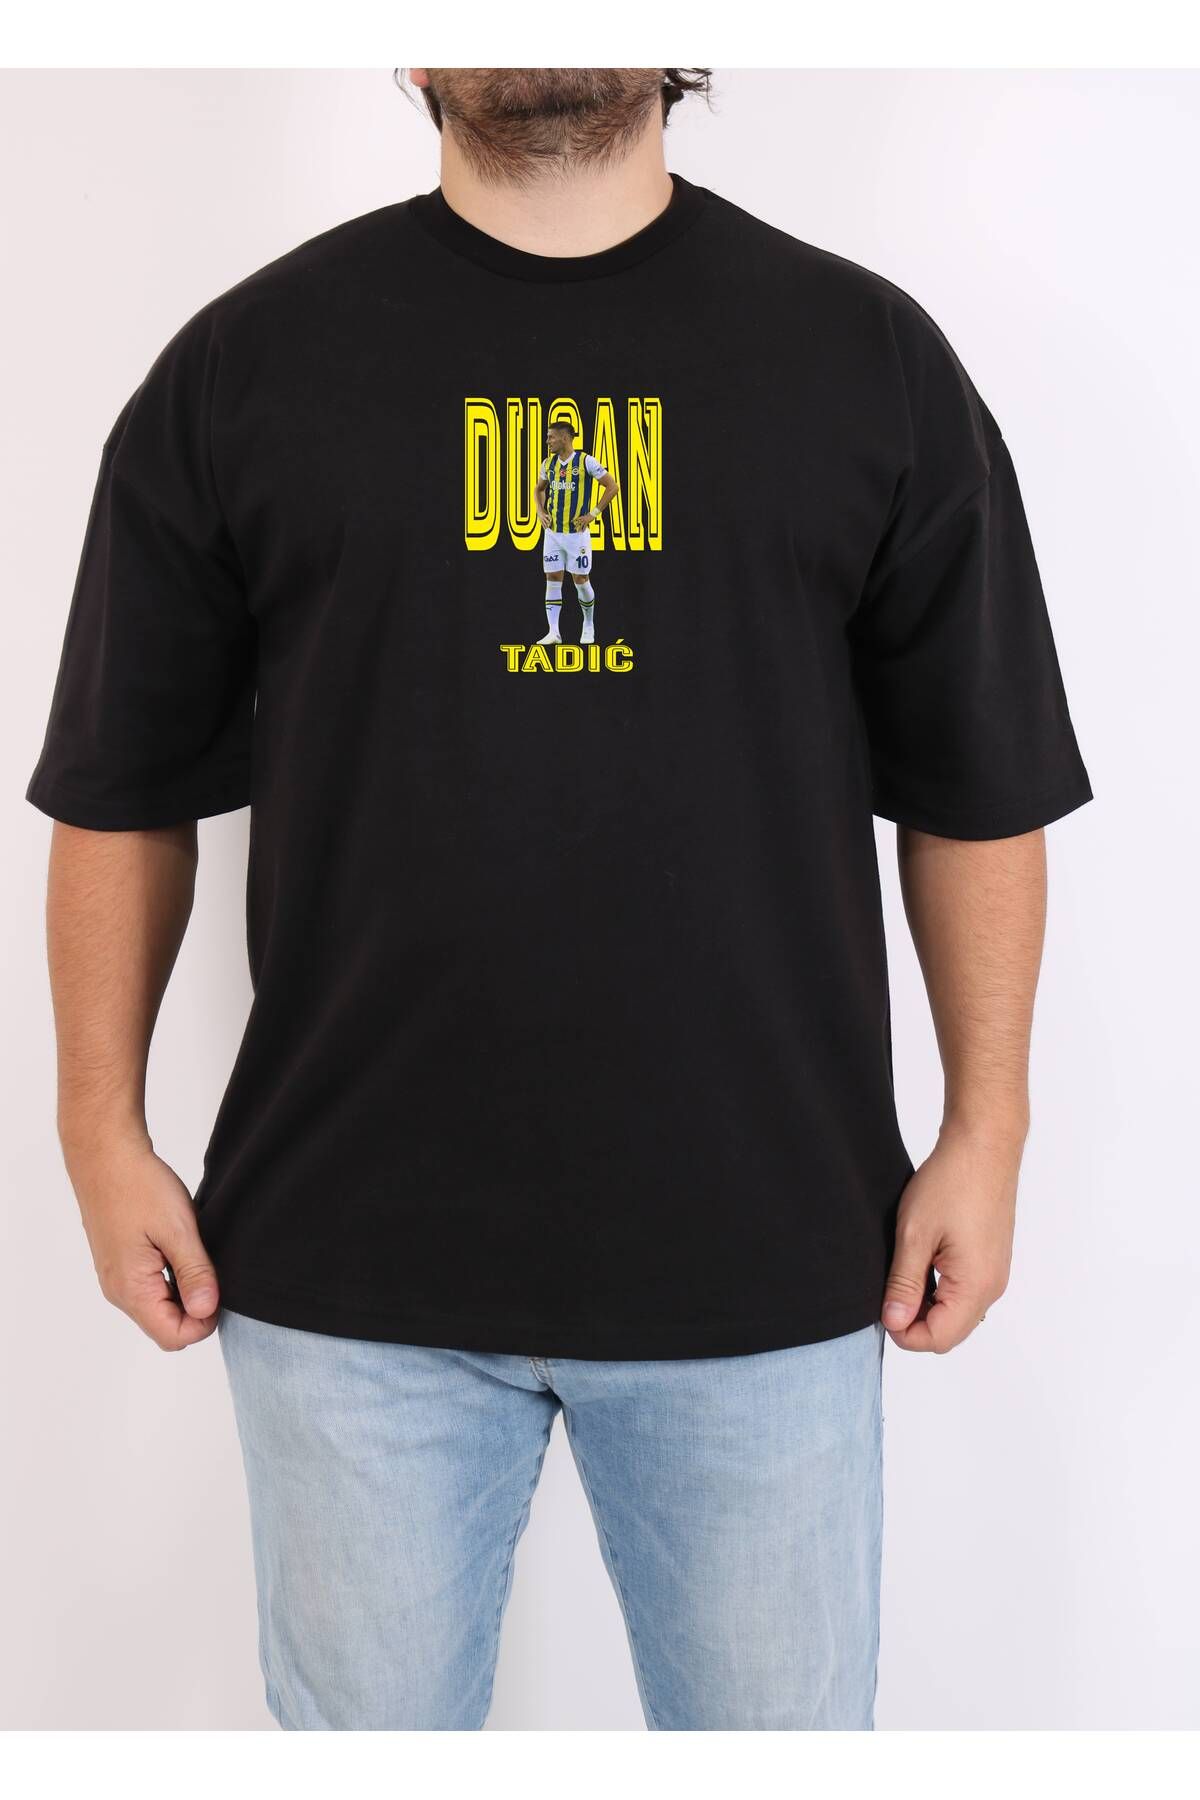 ByTheCoolest T-Shirt Tadic Baskılı Siyah 2iplik KalınT-shirt